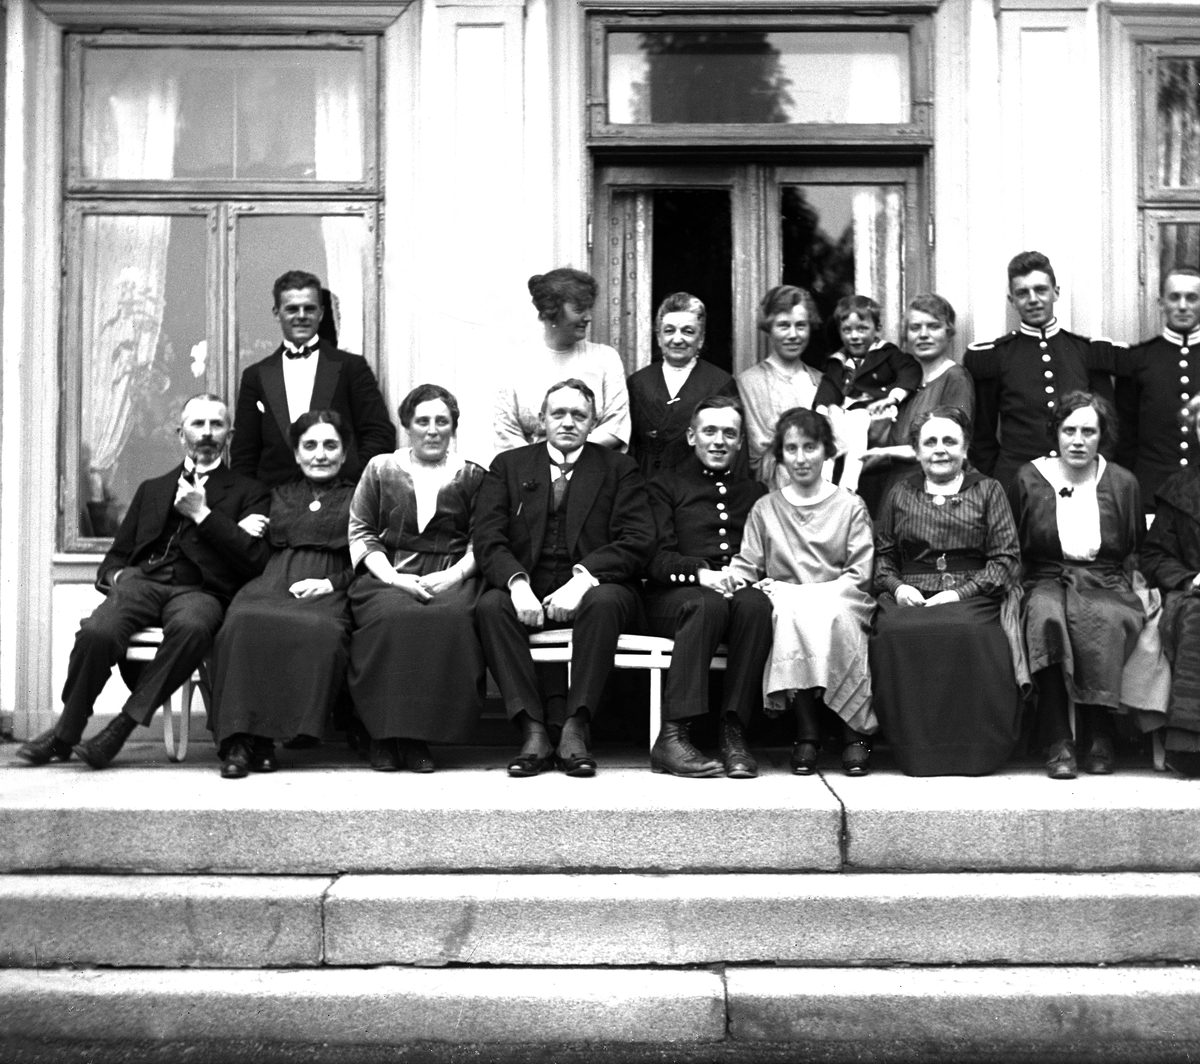 Bryllupsgjester samlet til annendags bryllup hos familien Klingenberg. I midten brudeparet Sofie Arentz og Leif Klingenberg, ytterst til venstre Dikka og Eyvind Arentz.  Fotografert mai 1921.